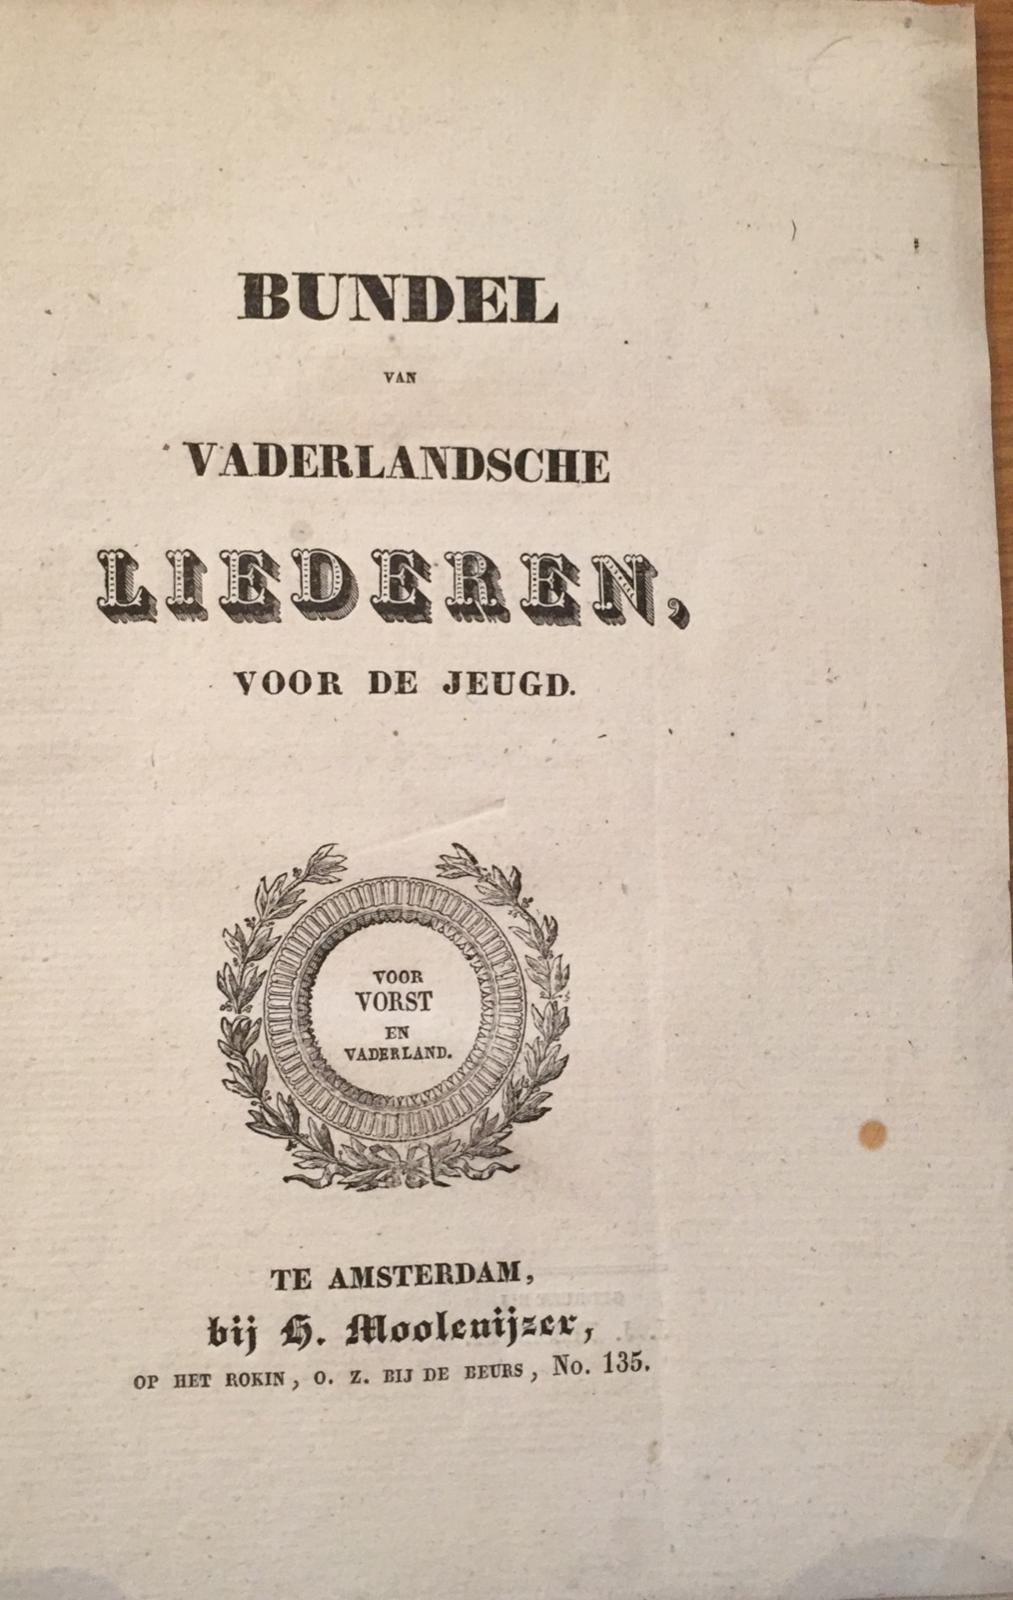 Bundel van Vaderlandsche liederen voor de jeugd, voor vorst en vaderland, te Amsterdam bij H. Moolenijzer, op het rokin, o.z. bij de beurs, no. 135, 16 pp, no cover.